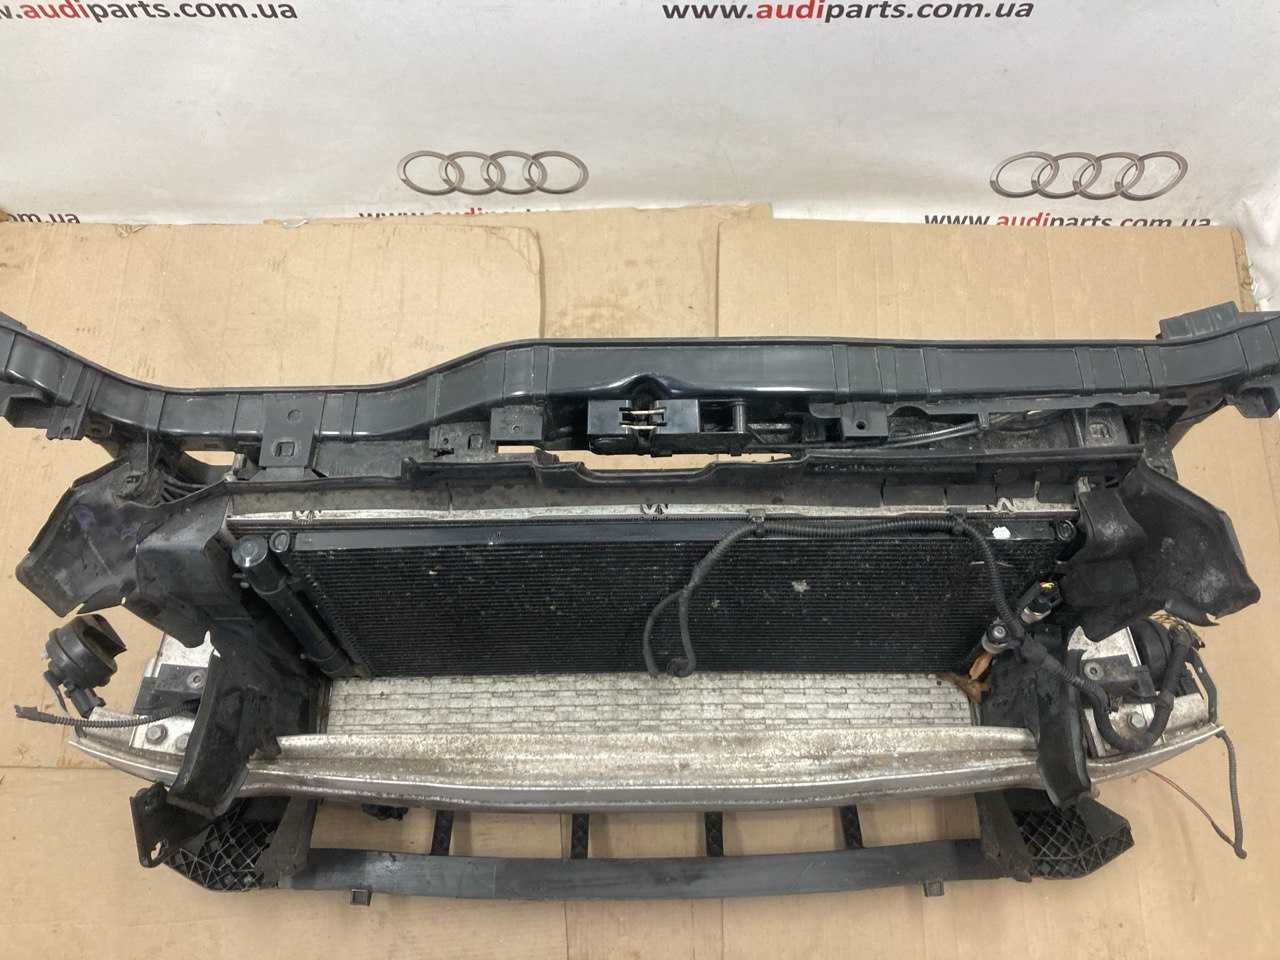 Установочная панель в сборе Audi Q5 - 8r, (3.0 TFSI) SQ5 2012-2017